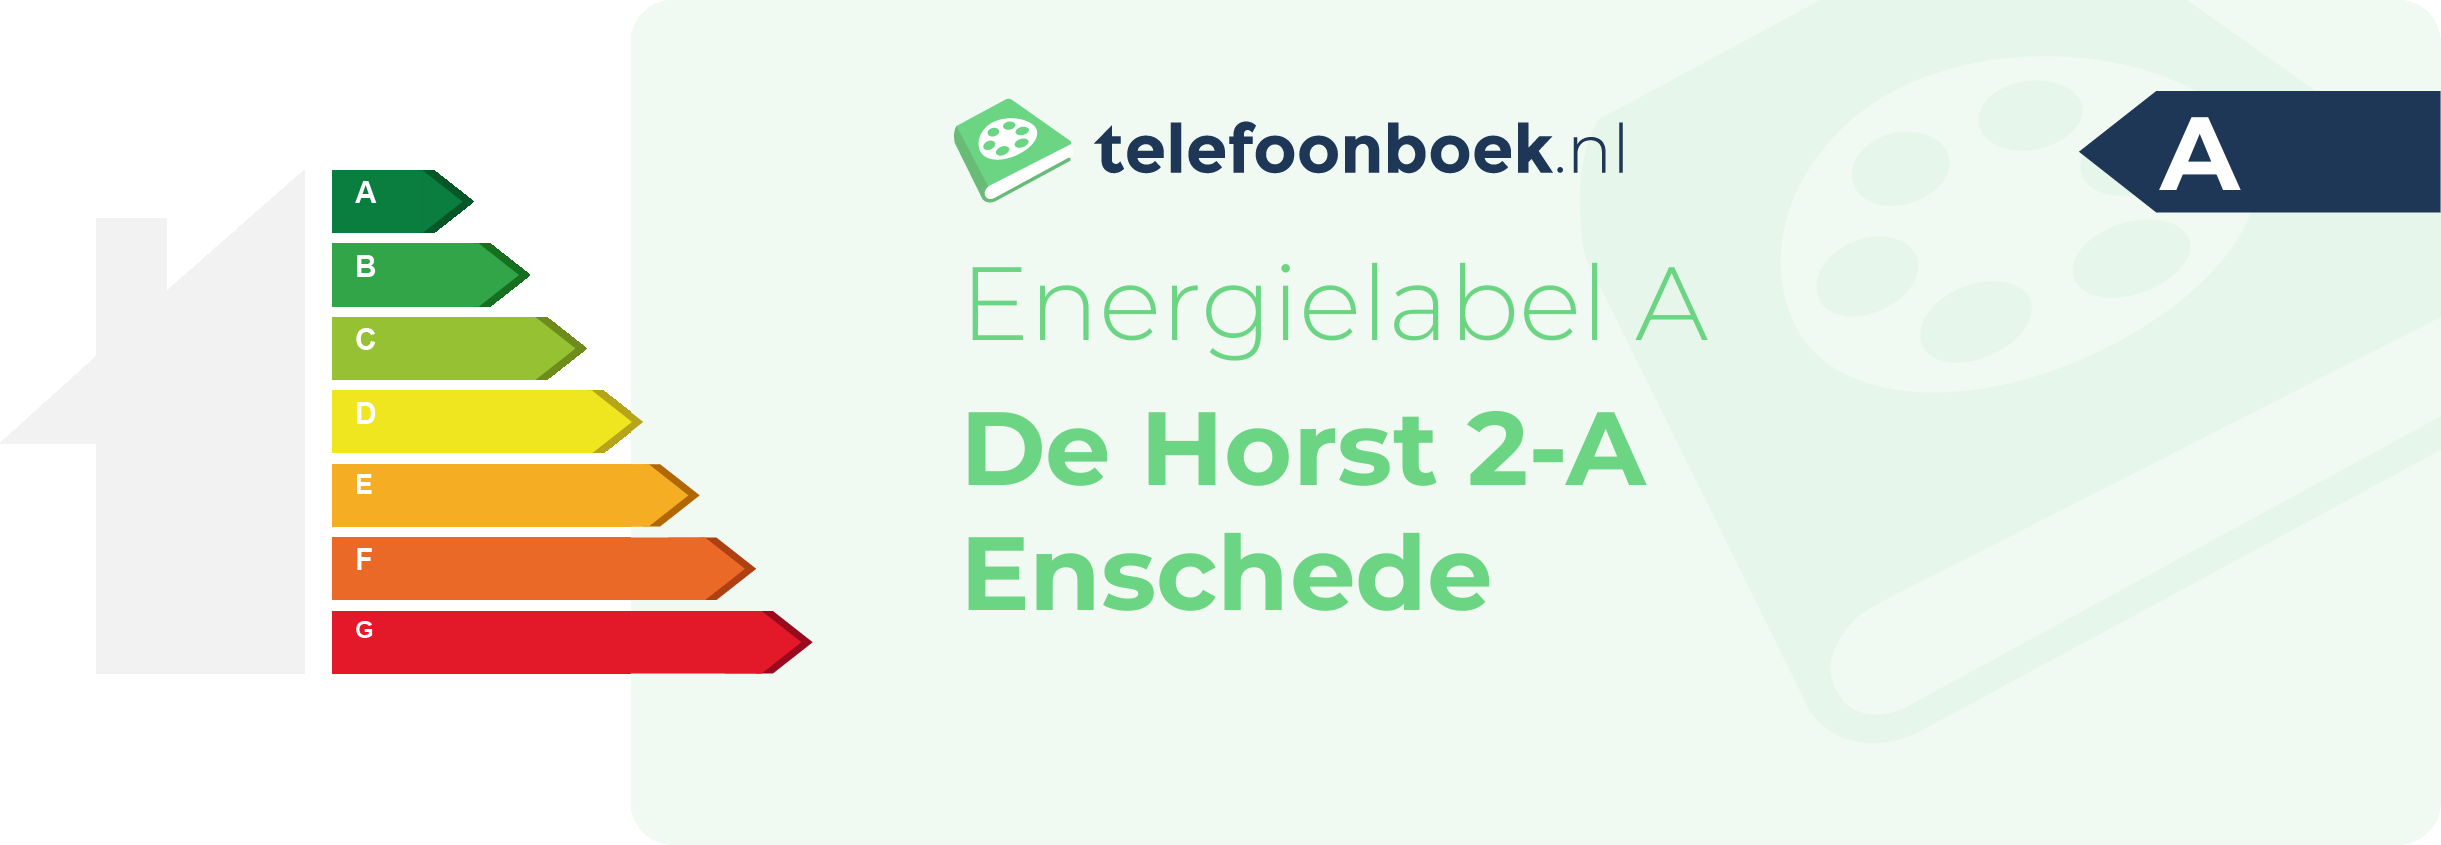 Energielabel De Horst 2-A Enschede